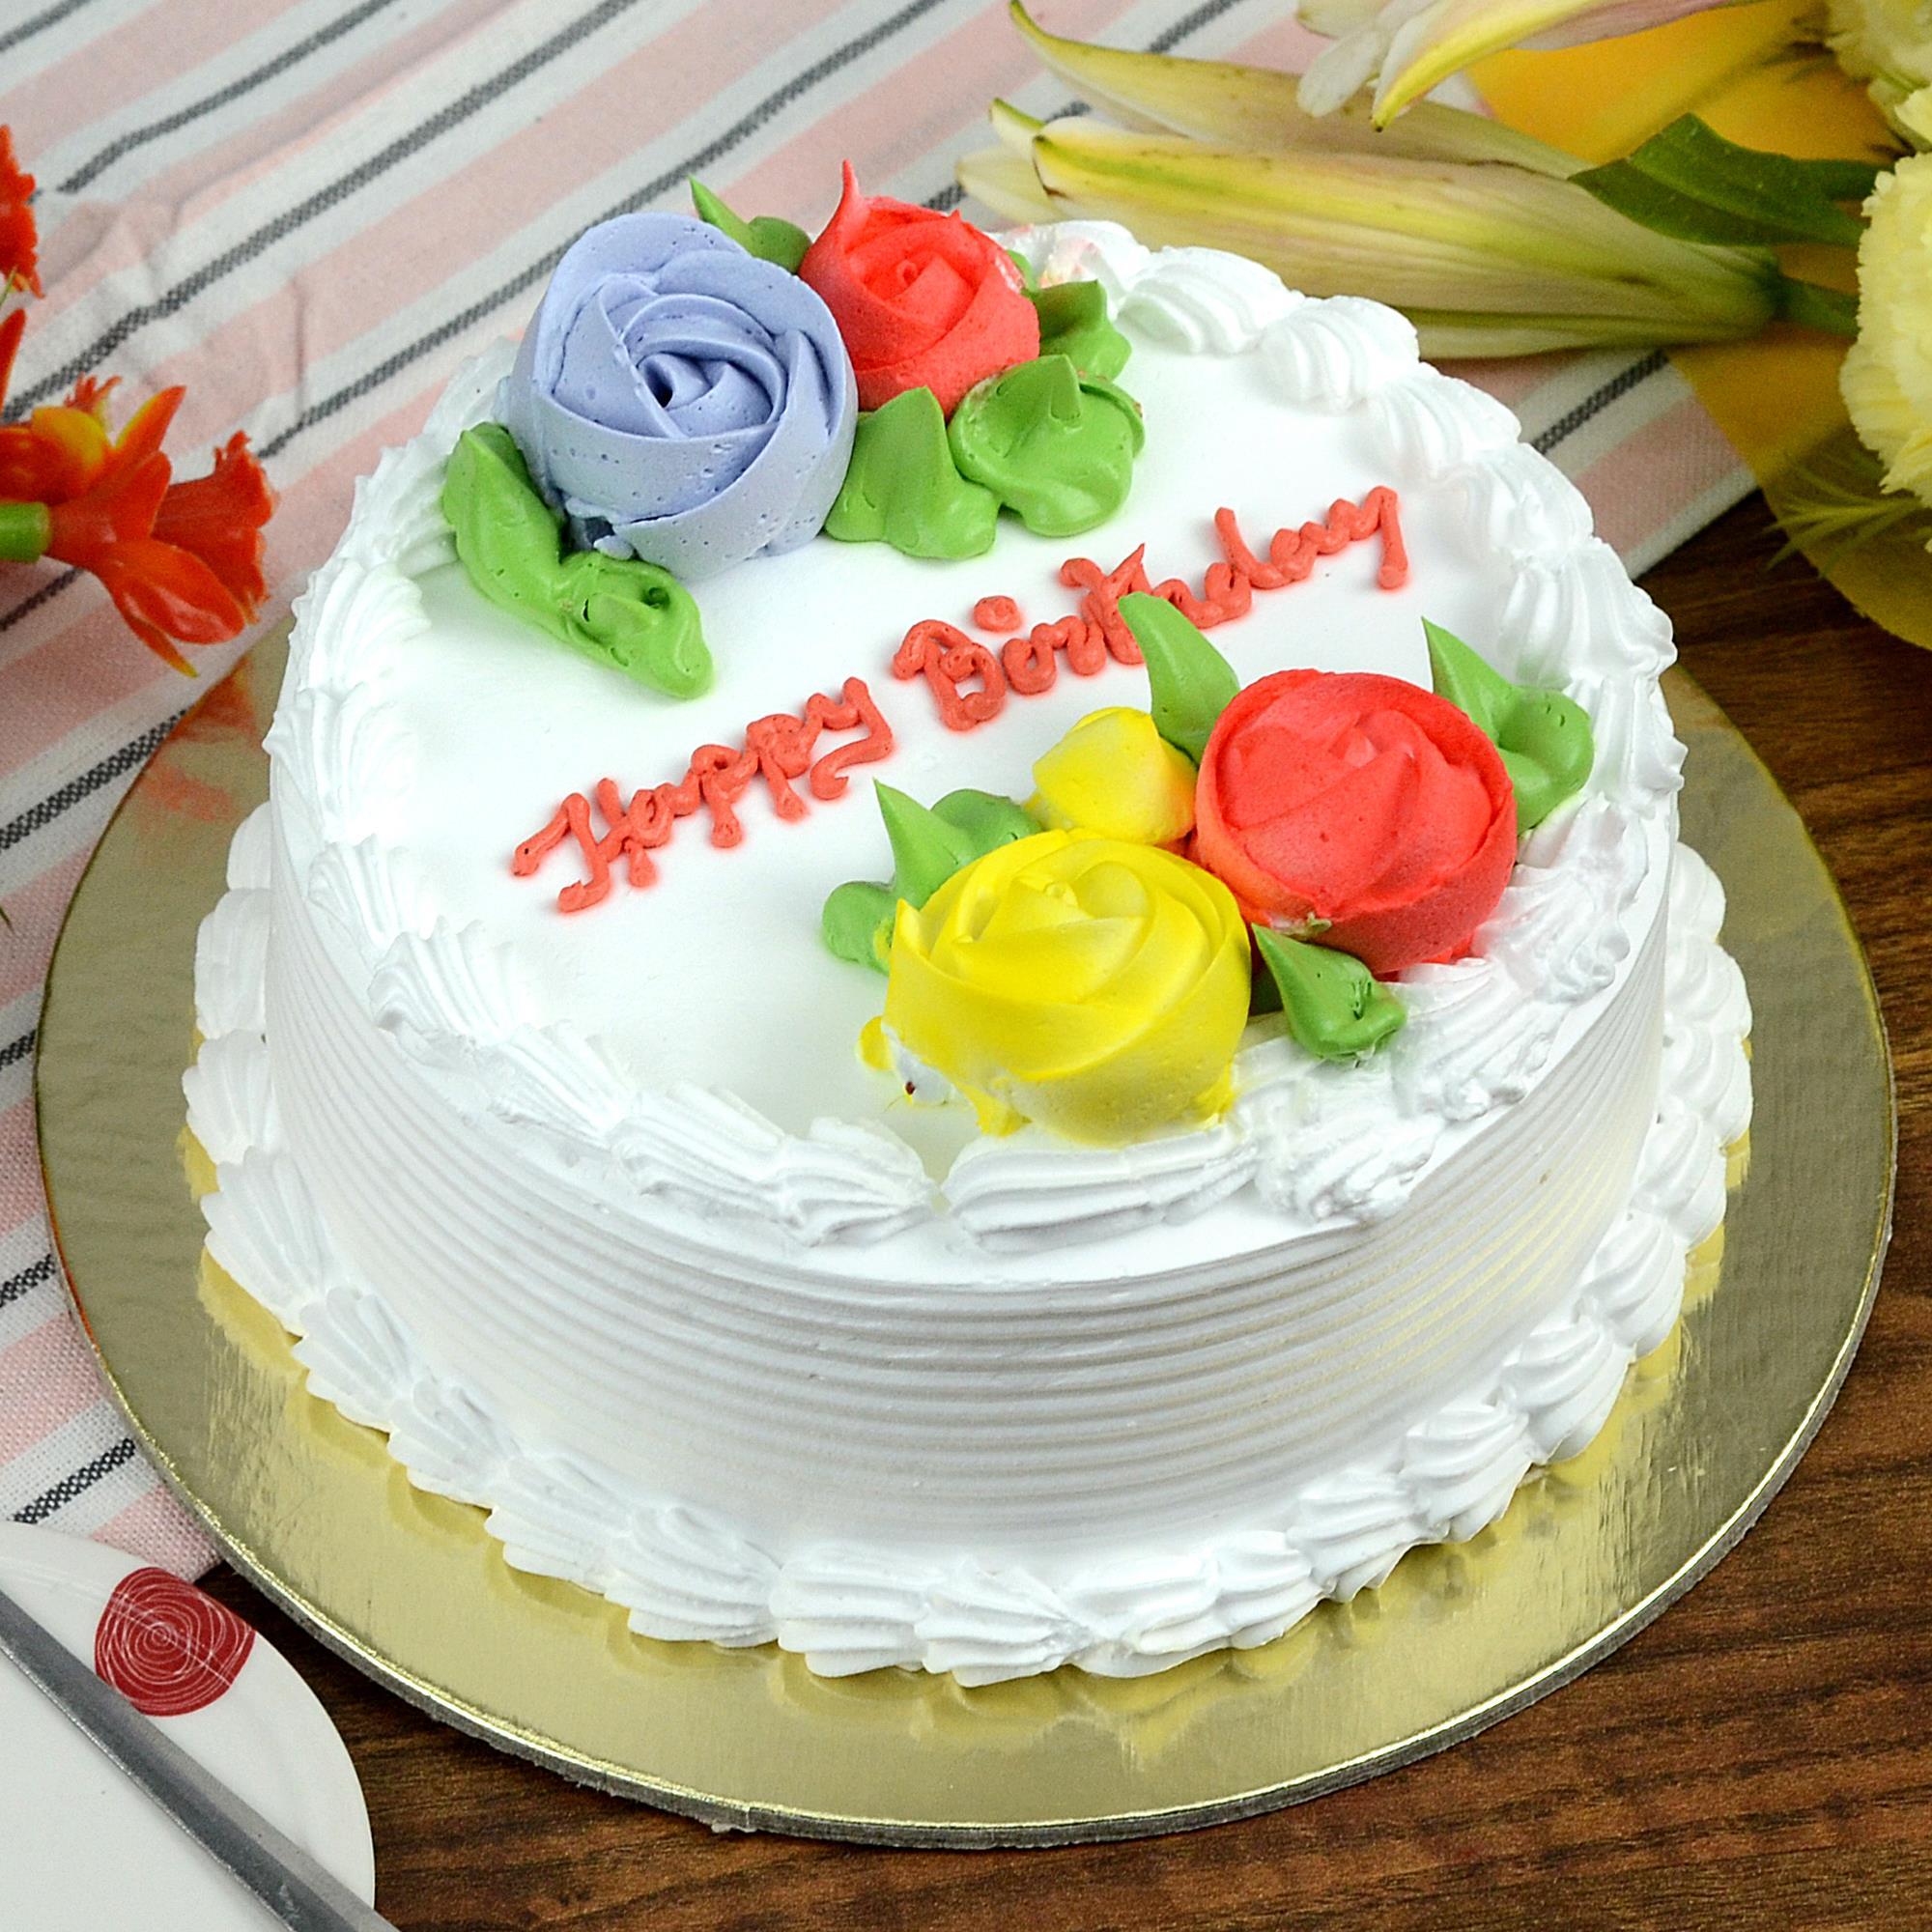 Order Half Kg Cakes Online, Buy Half Kg Cake, Send 1/2 Kg Cakes